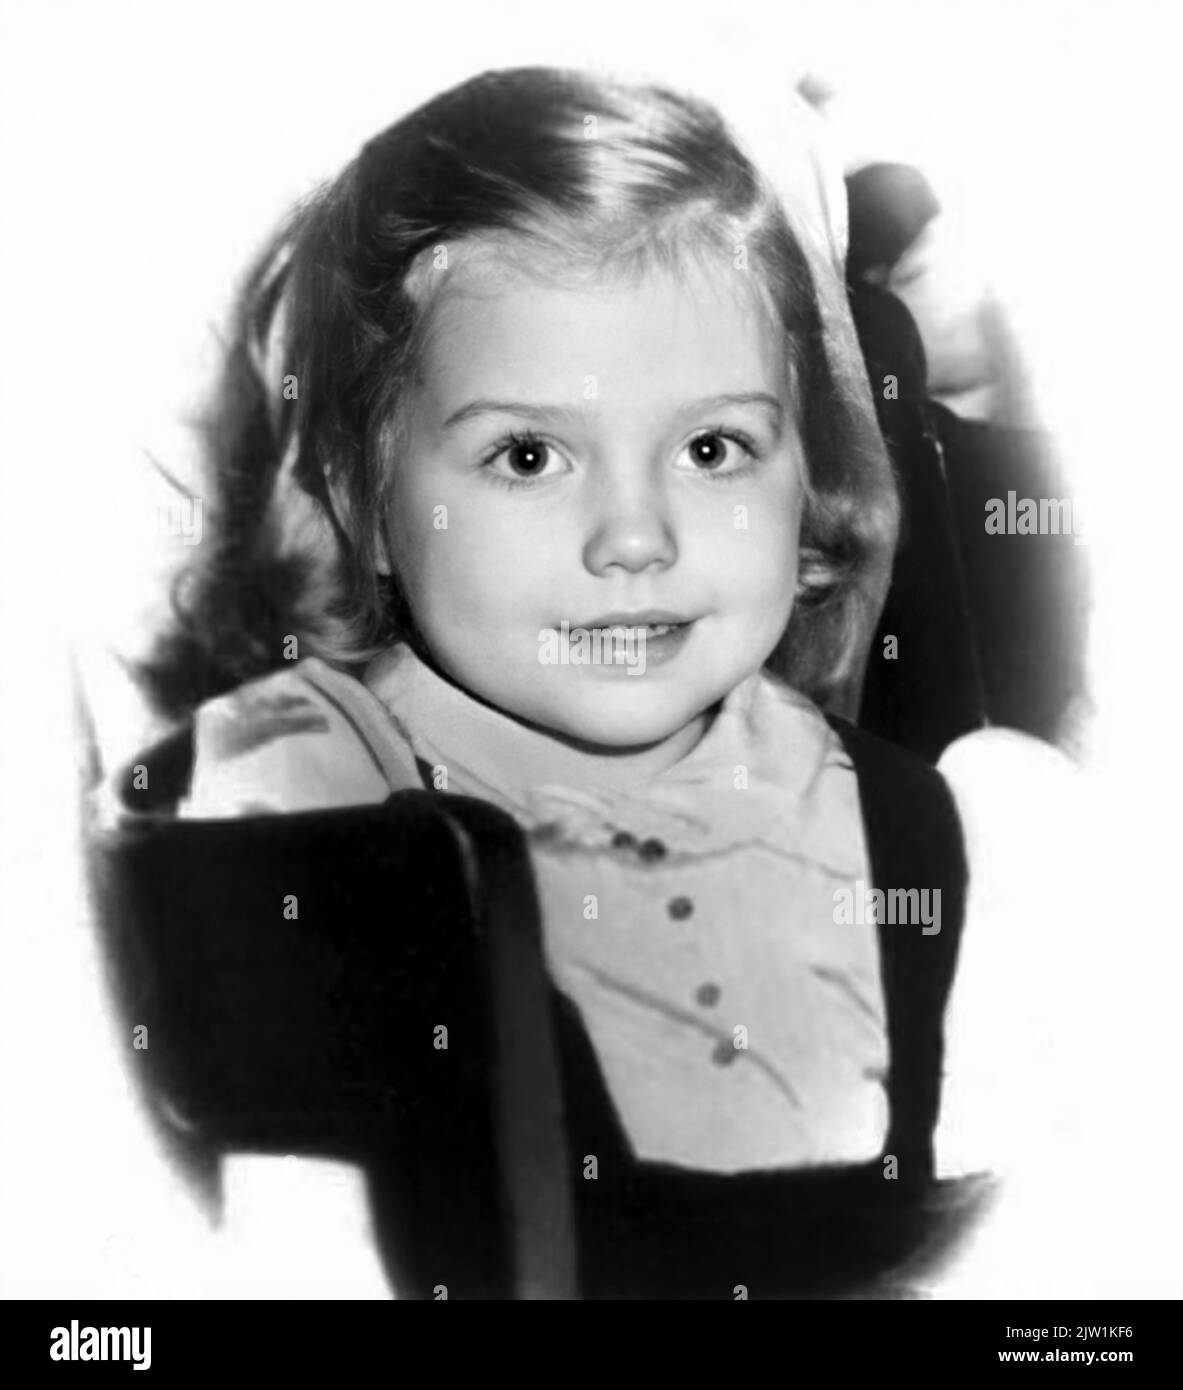 1950 , Chicago , USA : HILLARY CLINTON ( Hillary Diane Rodhamborn , nato il 26 ottobre 1947 ), sposato con il 42nd° Presidente del? Stati Uniti, in servizio dal 1?993 al 2001, BILL CLINTON (nato William Jefferson B?lythe III il 19 agosto 1946 )?. In questa foto, quando era una giovane ragazza di 3 anni. Fotografo sconosciuto .- Presidente della Repubblica degli STATI Uniti AMERICA - DONNA POLITICO - POLITICA - POLITICA - STORIA - FOTO STORICHE - RITRATTO - ritratto - personalità personalità da giovane giovani - da bambino bambini bambina - personalità quando Foto Stock